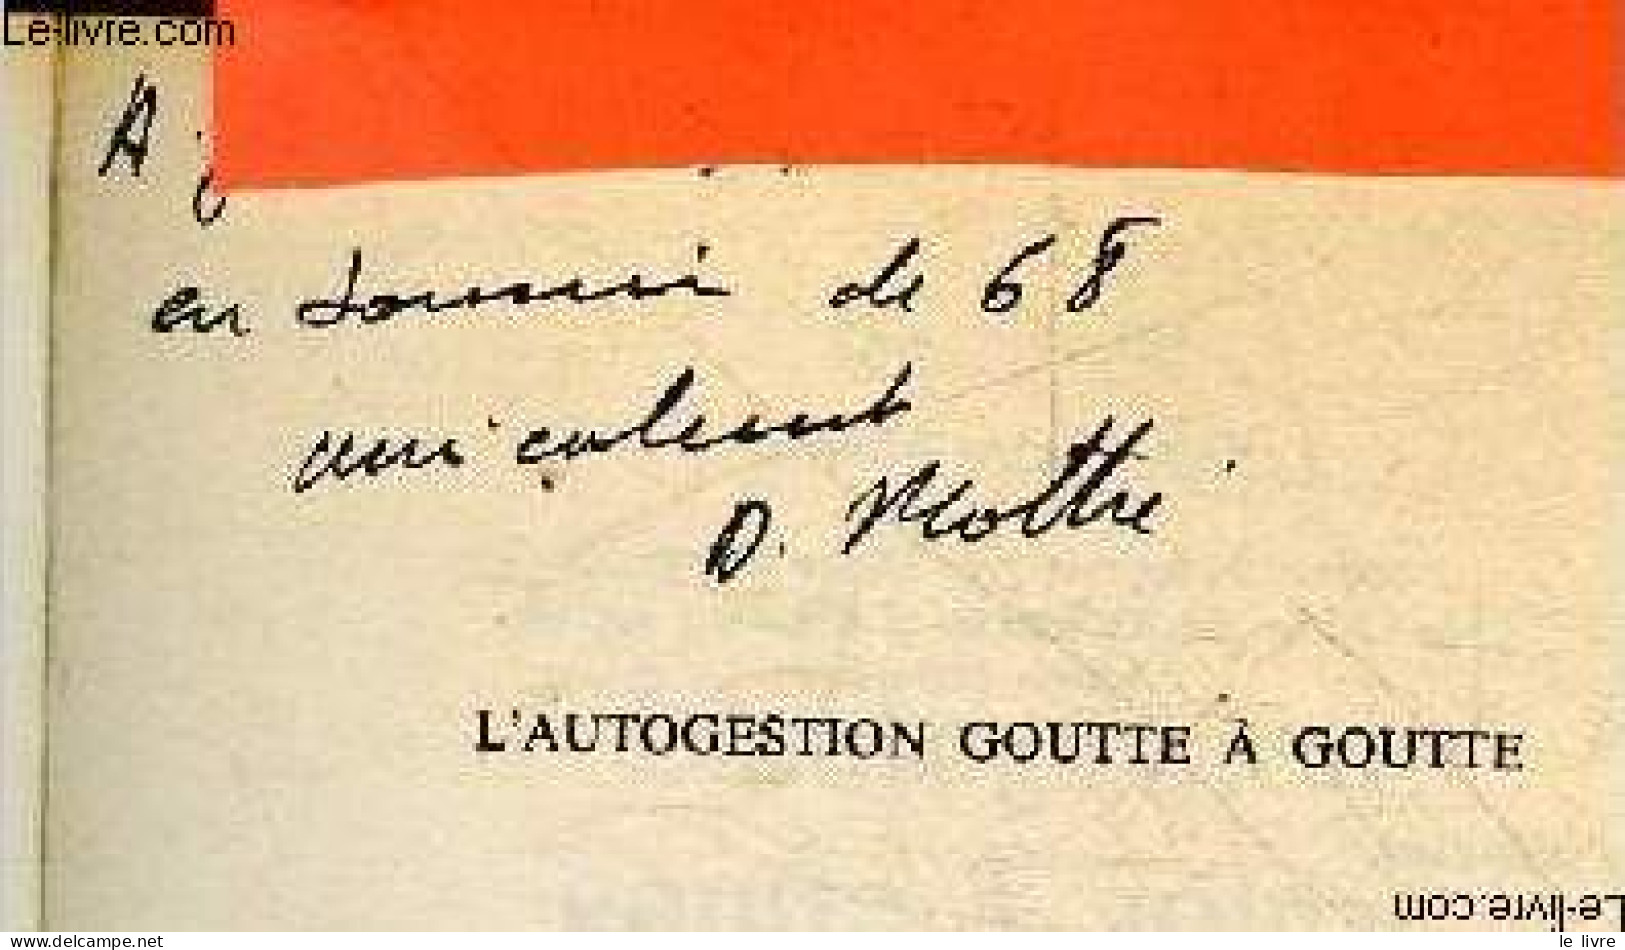 L'autogestion Goutte A Goutte - Collection Faire Notre Histoire - + Envoi De L'auteur - MOTHE DANIEL - 1980 - Livres Dédicacés